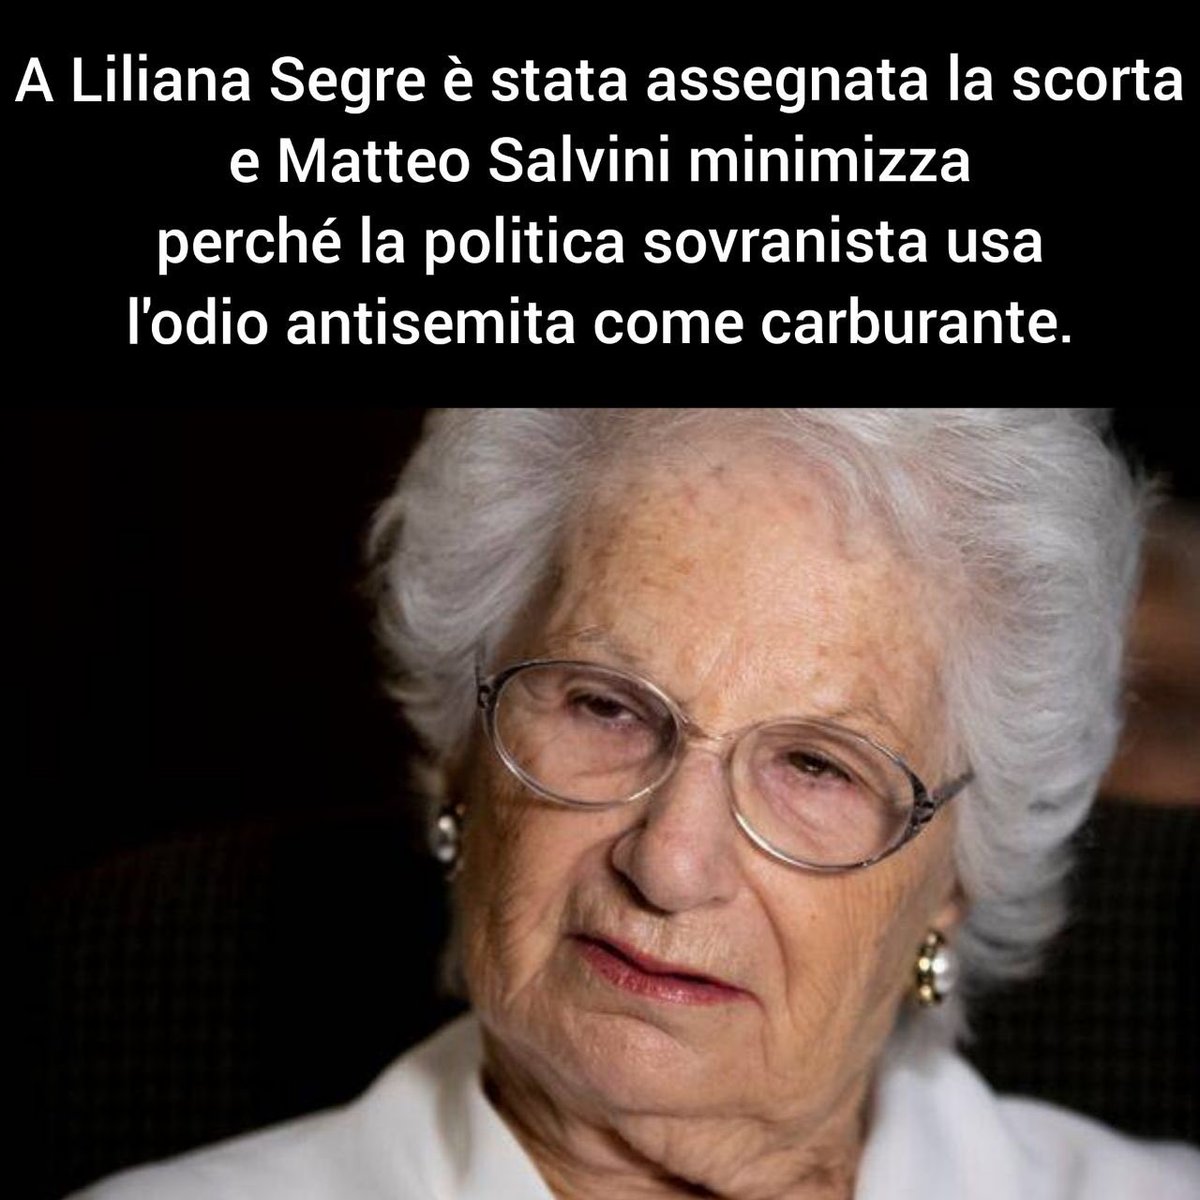 La politica sovranista usa l’odio antisemita come carburante. #LilianaSegre è sotto scorta e Salvini minimizza. La propaganda xenofoba di Matteo Salvini è il problema che la democrazia italiana non ha la forza di  affrontare: ciò che è accaduto alla senatrice Segre ne è la prova.